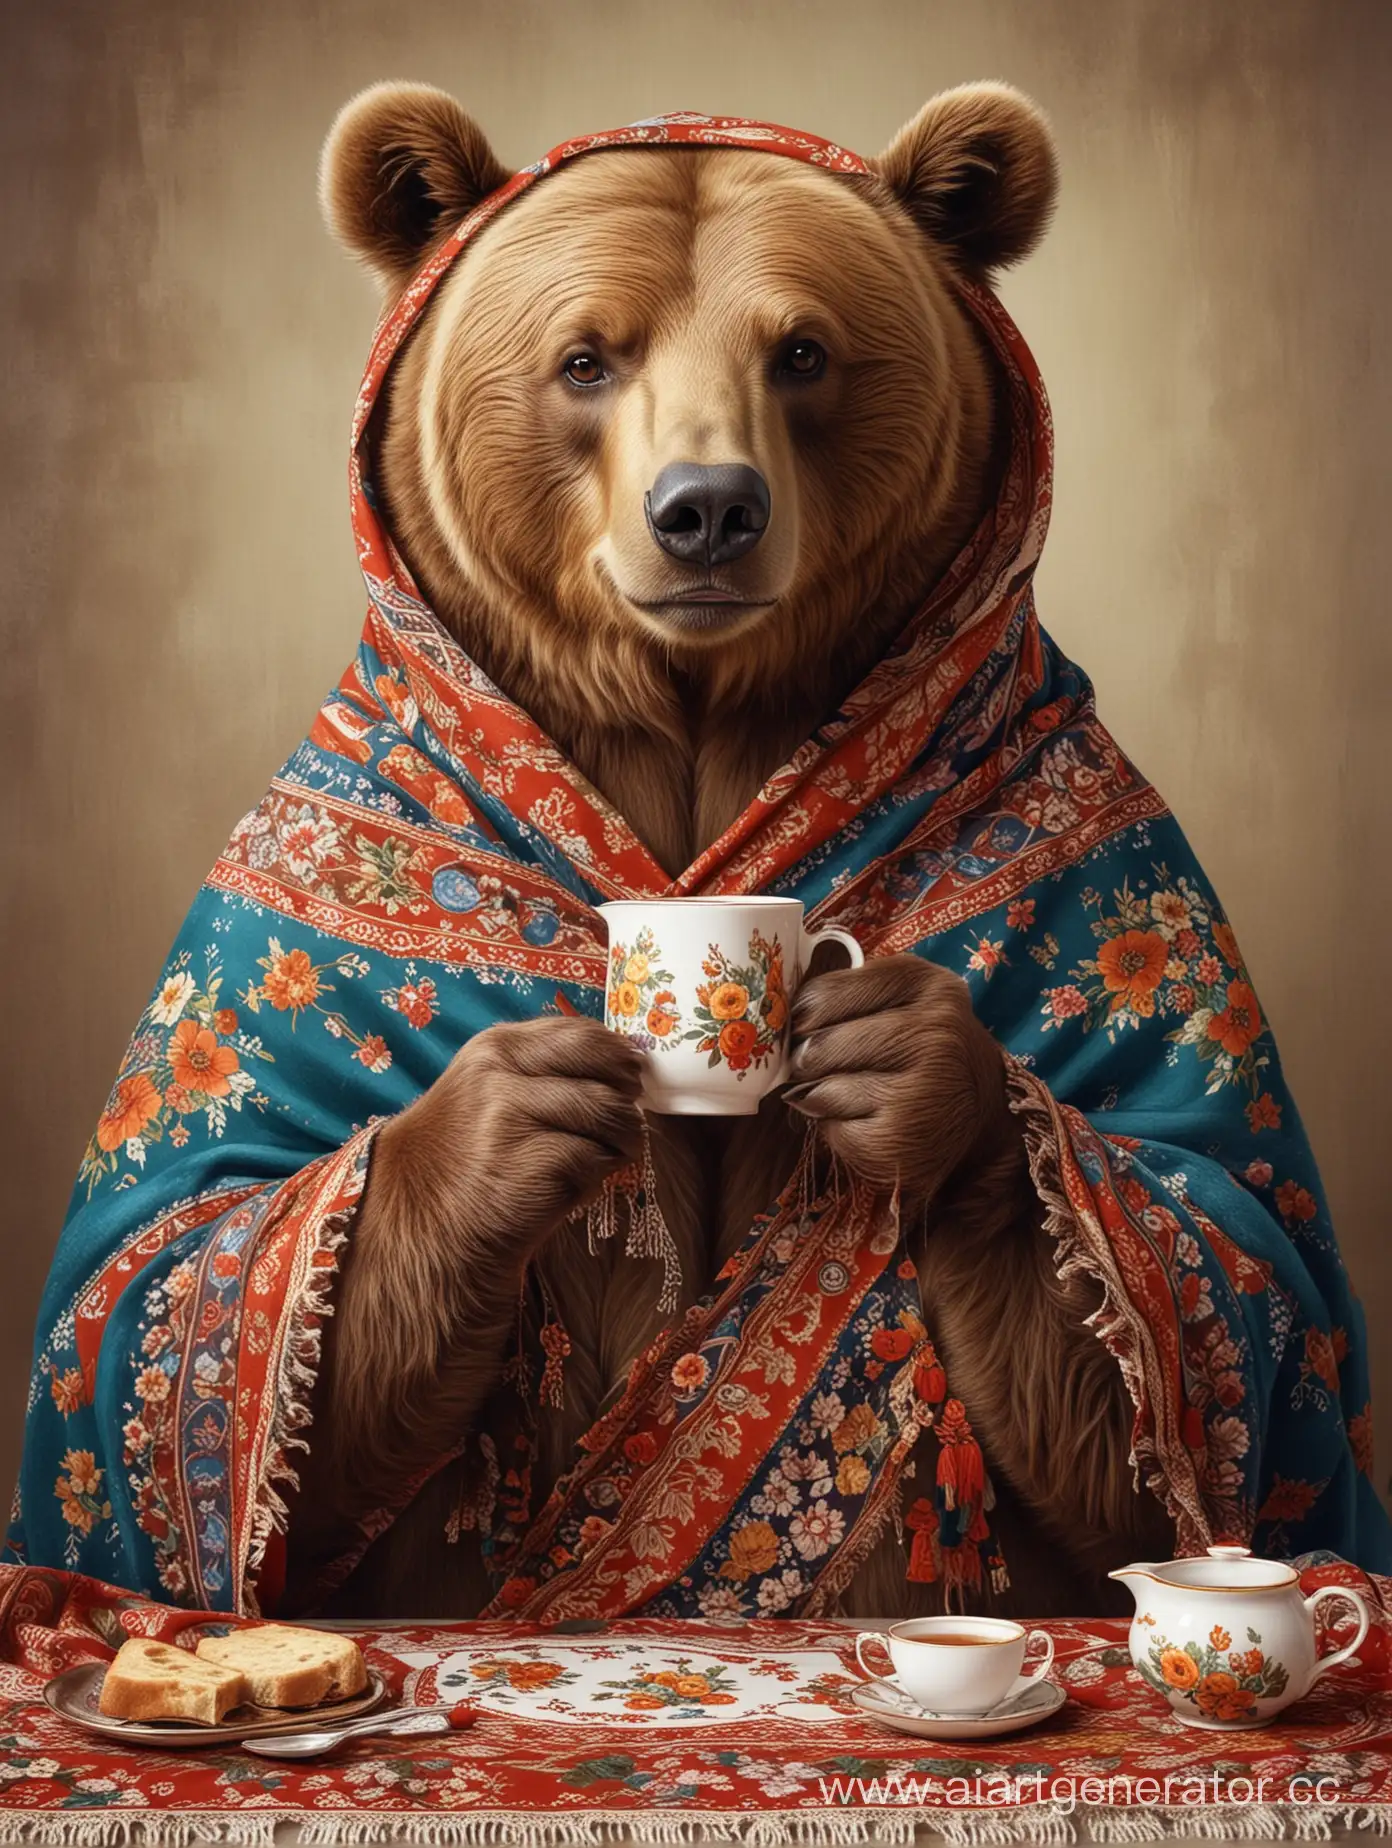 бурый медведь в русском платке с узорами работает пьет чай